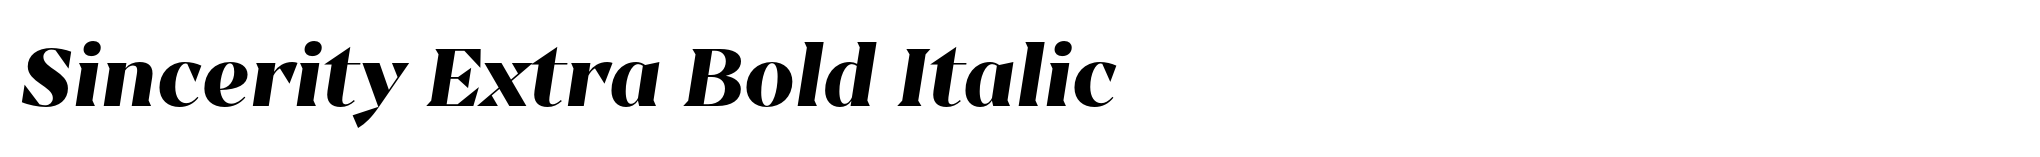 Sincerity Extra Bold Italic image